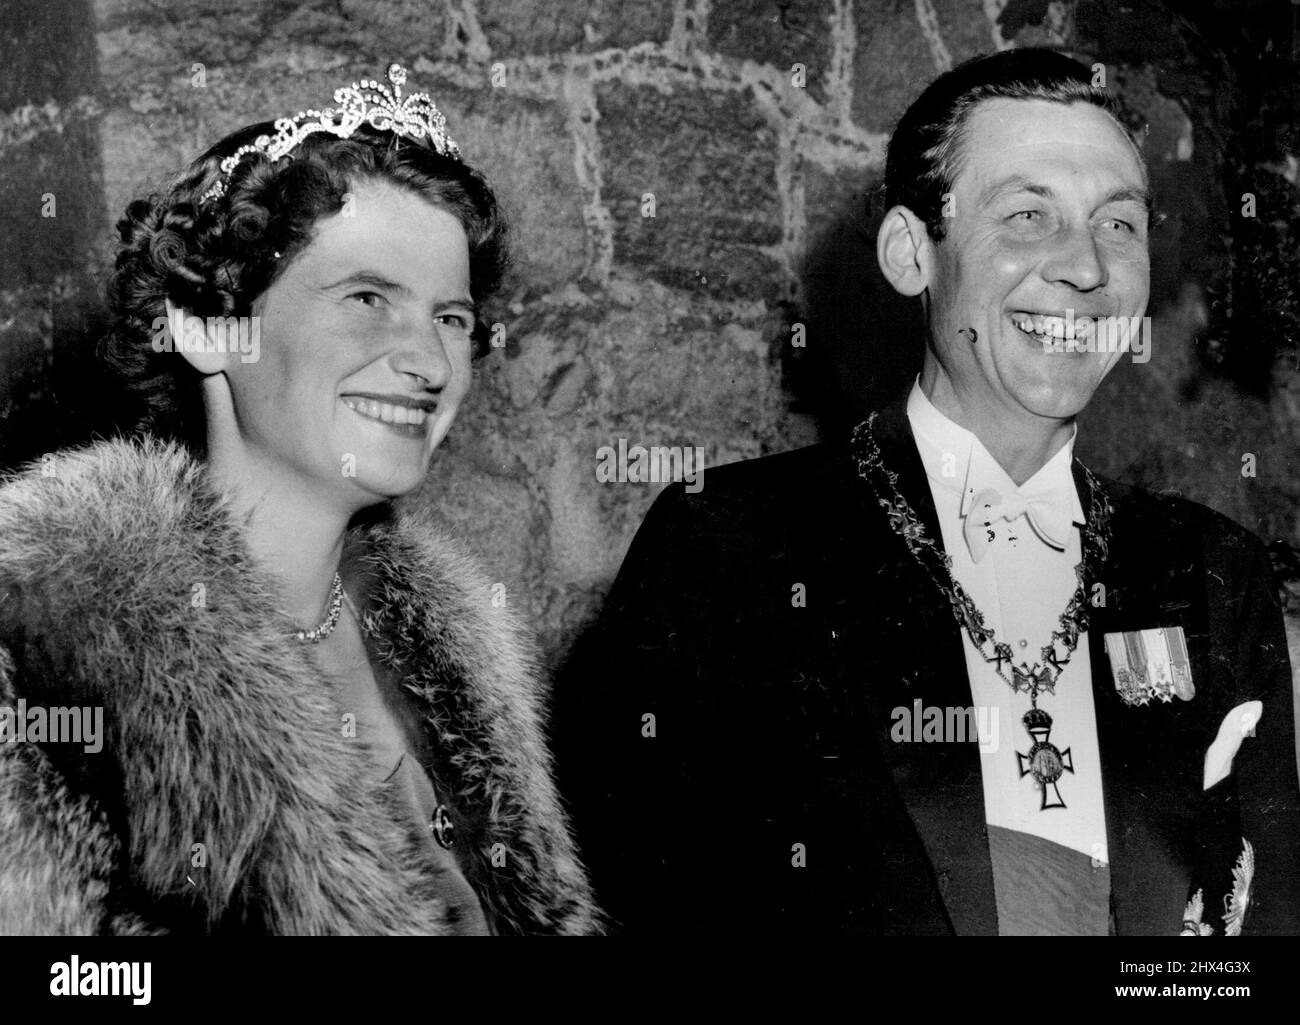 Königspaar sieht Fackelparade - Prinz Ernst August von Hannover und seine Braut, Prinzessin Ortrud zu Schleswig-Holstein Sonderburg Gluecksburg, stehen vor den Toren von Schloss Marienburg, als am Vorabend ihrer Kirchenhochzeit in Hannover rund 4.000 Wohlhabende eine Fackelparade zu ihren Ehren veranstalteten. Das Paar wurde letzte Woche bei einer standesamtlichen Zeremonie im Schloss verheiratet. 5. September 1951. Stockfoto